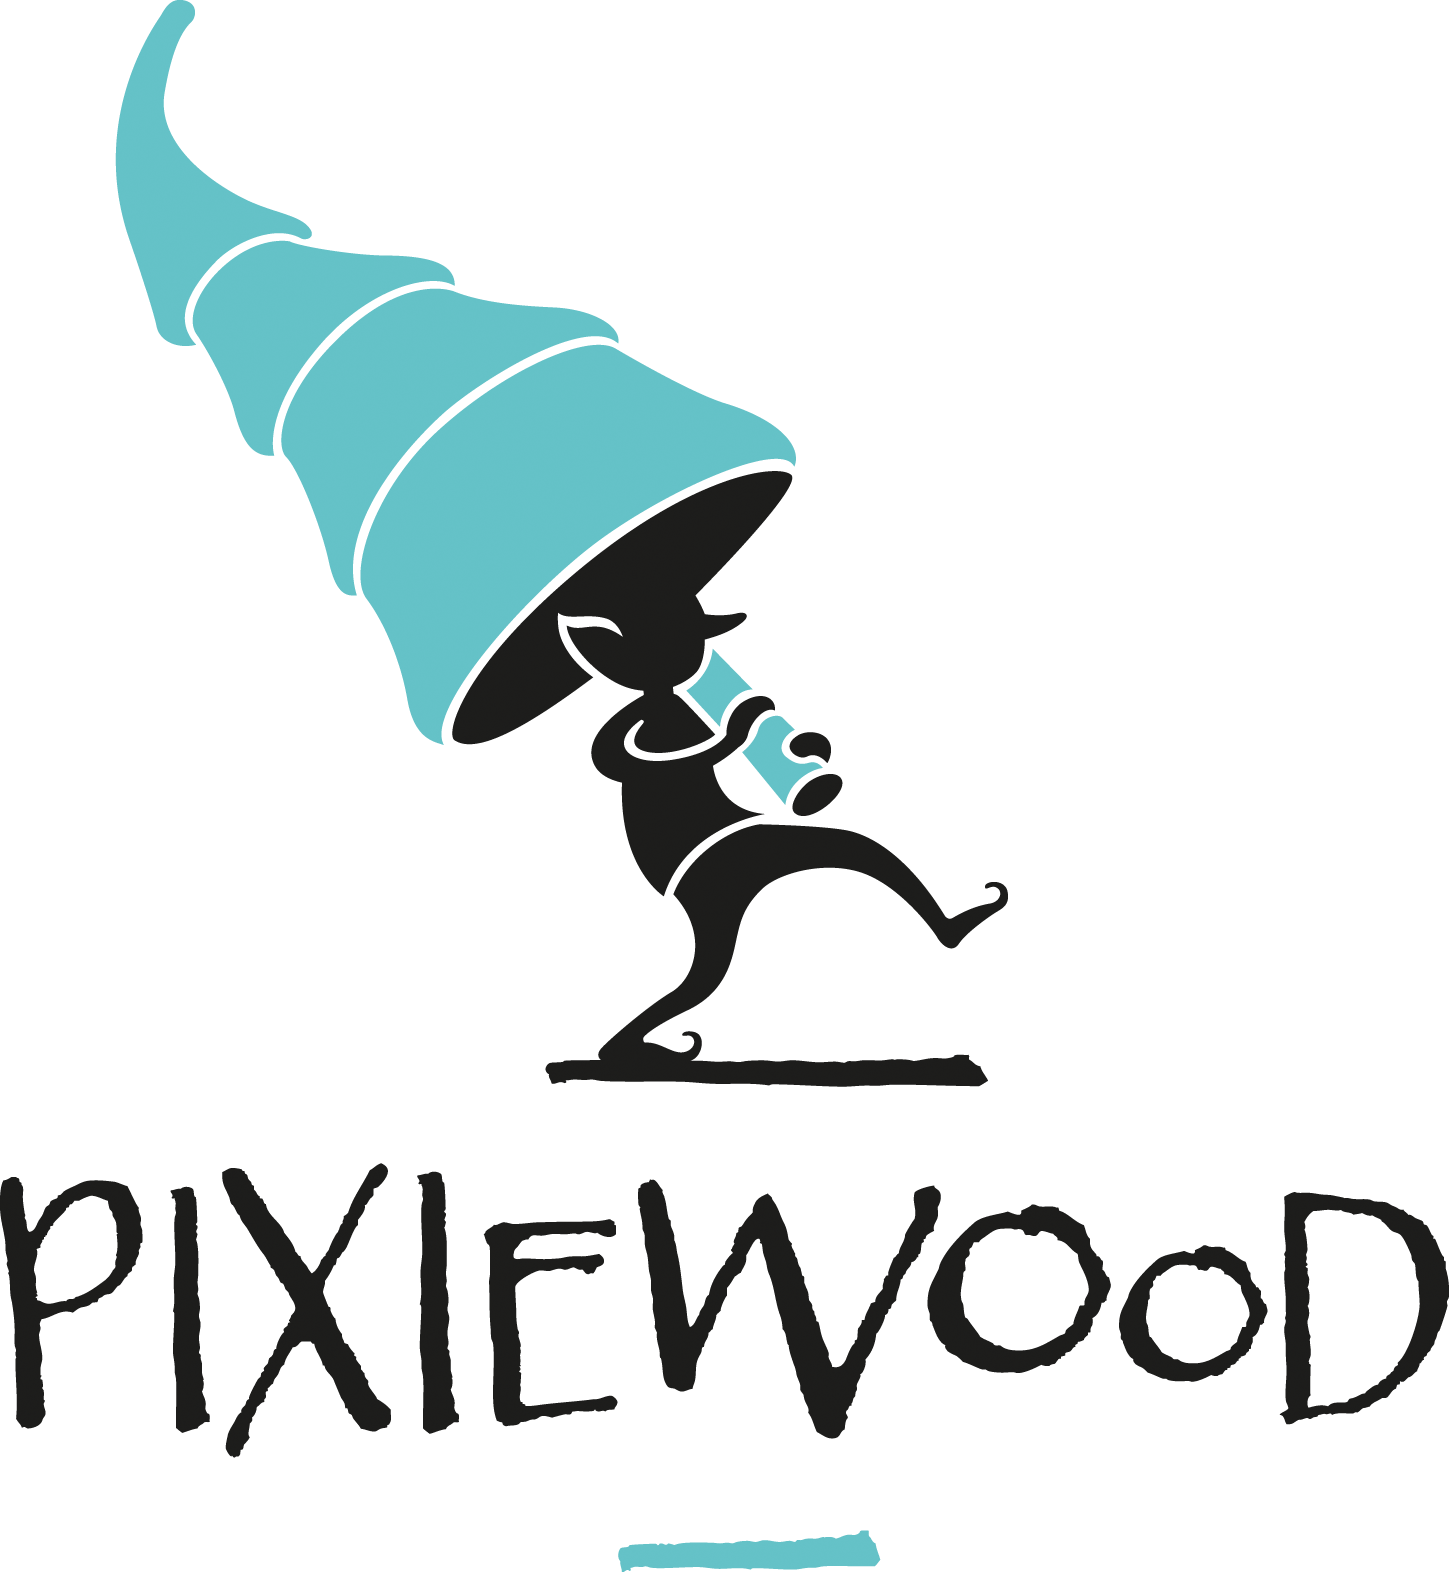 Pixiewood